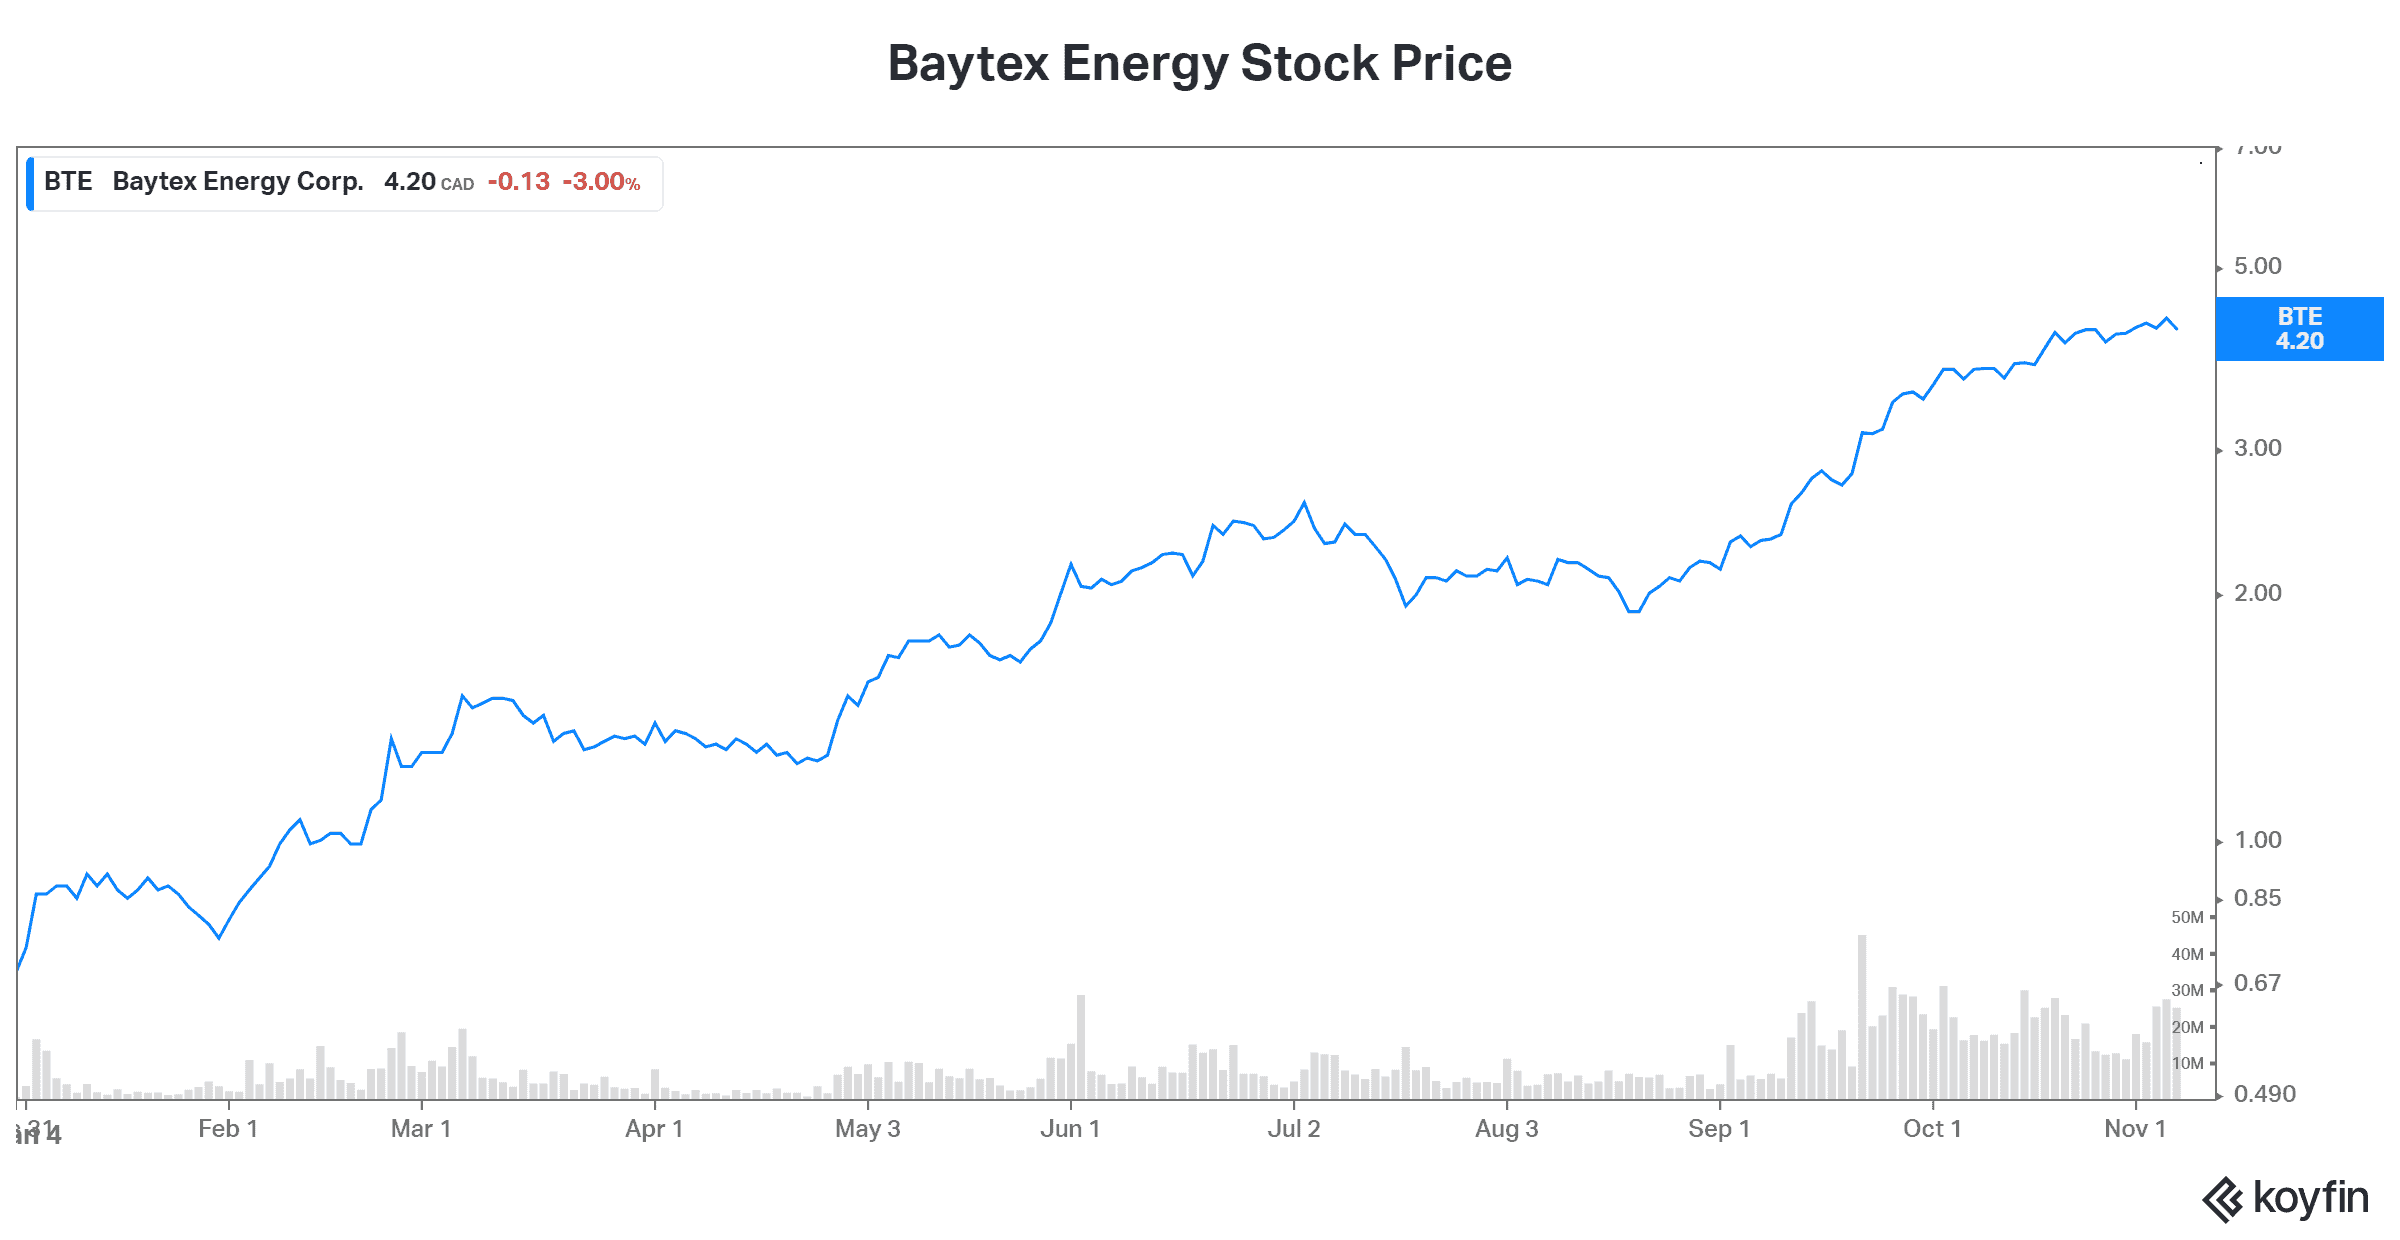 Canadian stock Baytex stock price